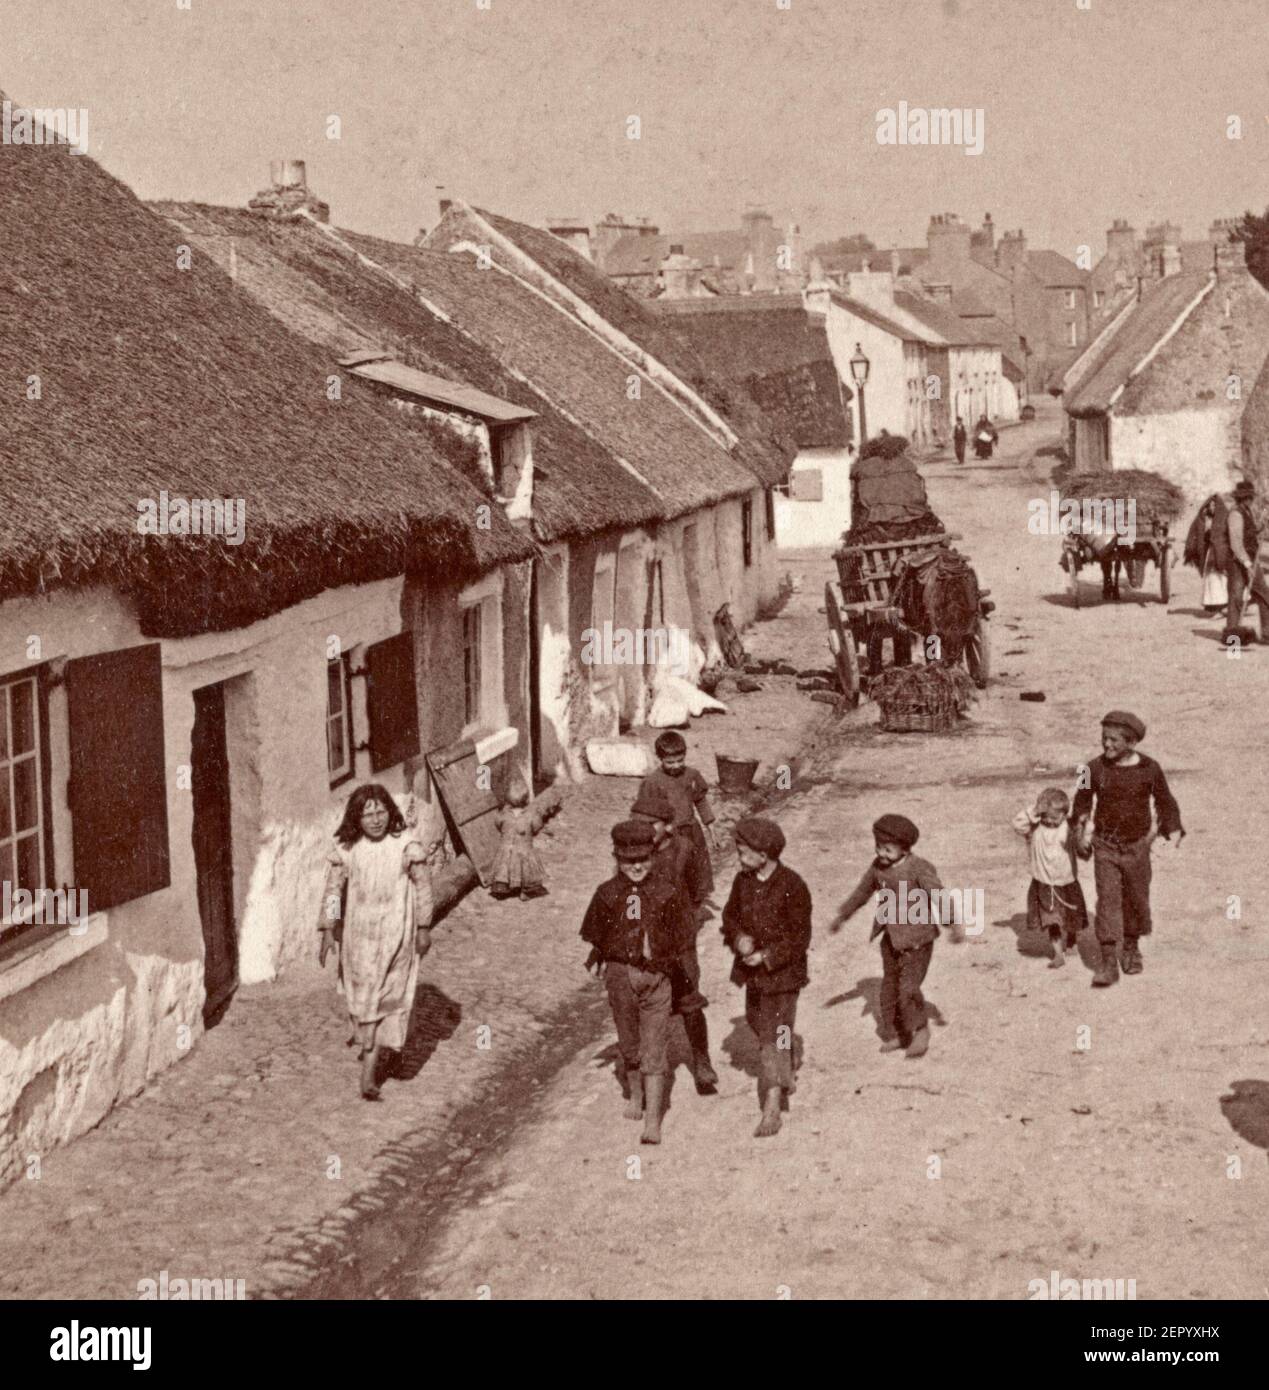 A Claddagh - dove sopravvivono le vecchie usanze e lingue irlandesi - sobborgo di Galway, Irlanda, 1901 Foto Stock